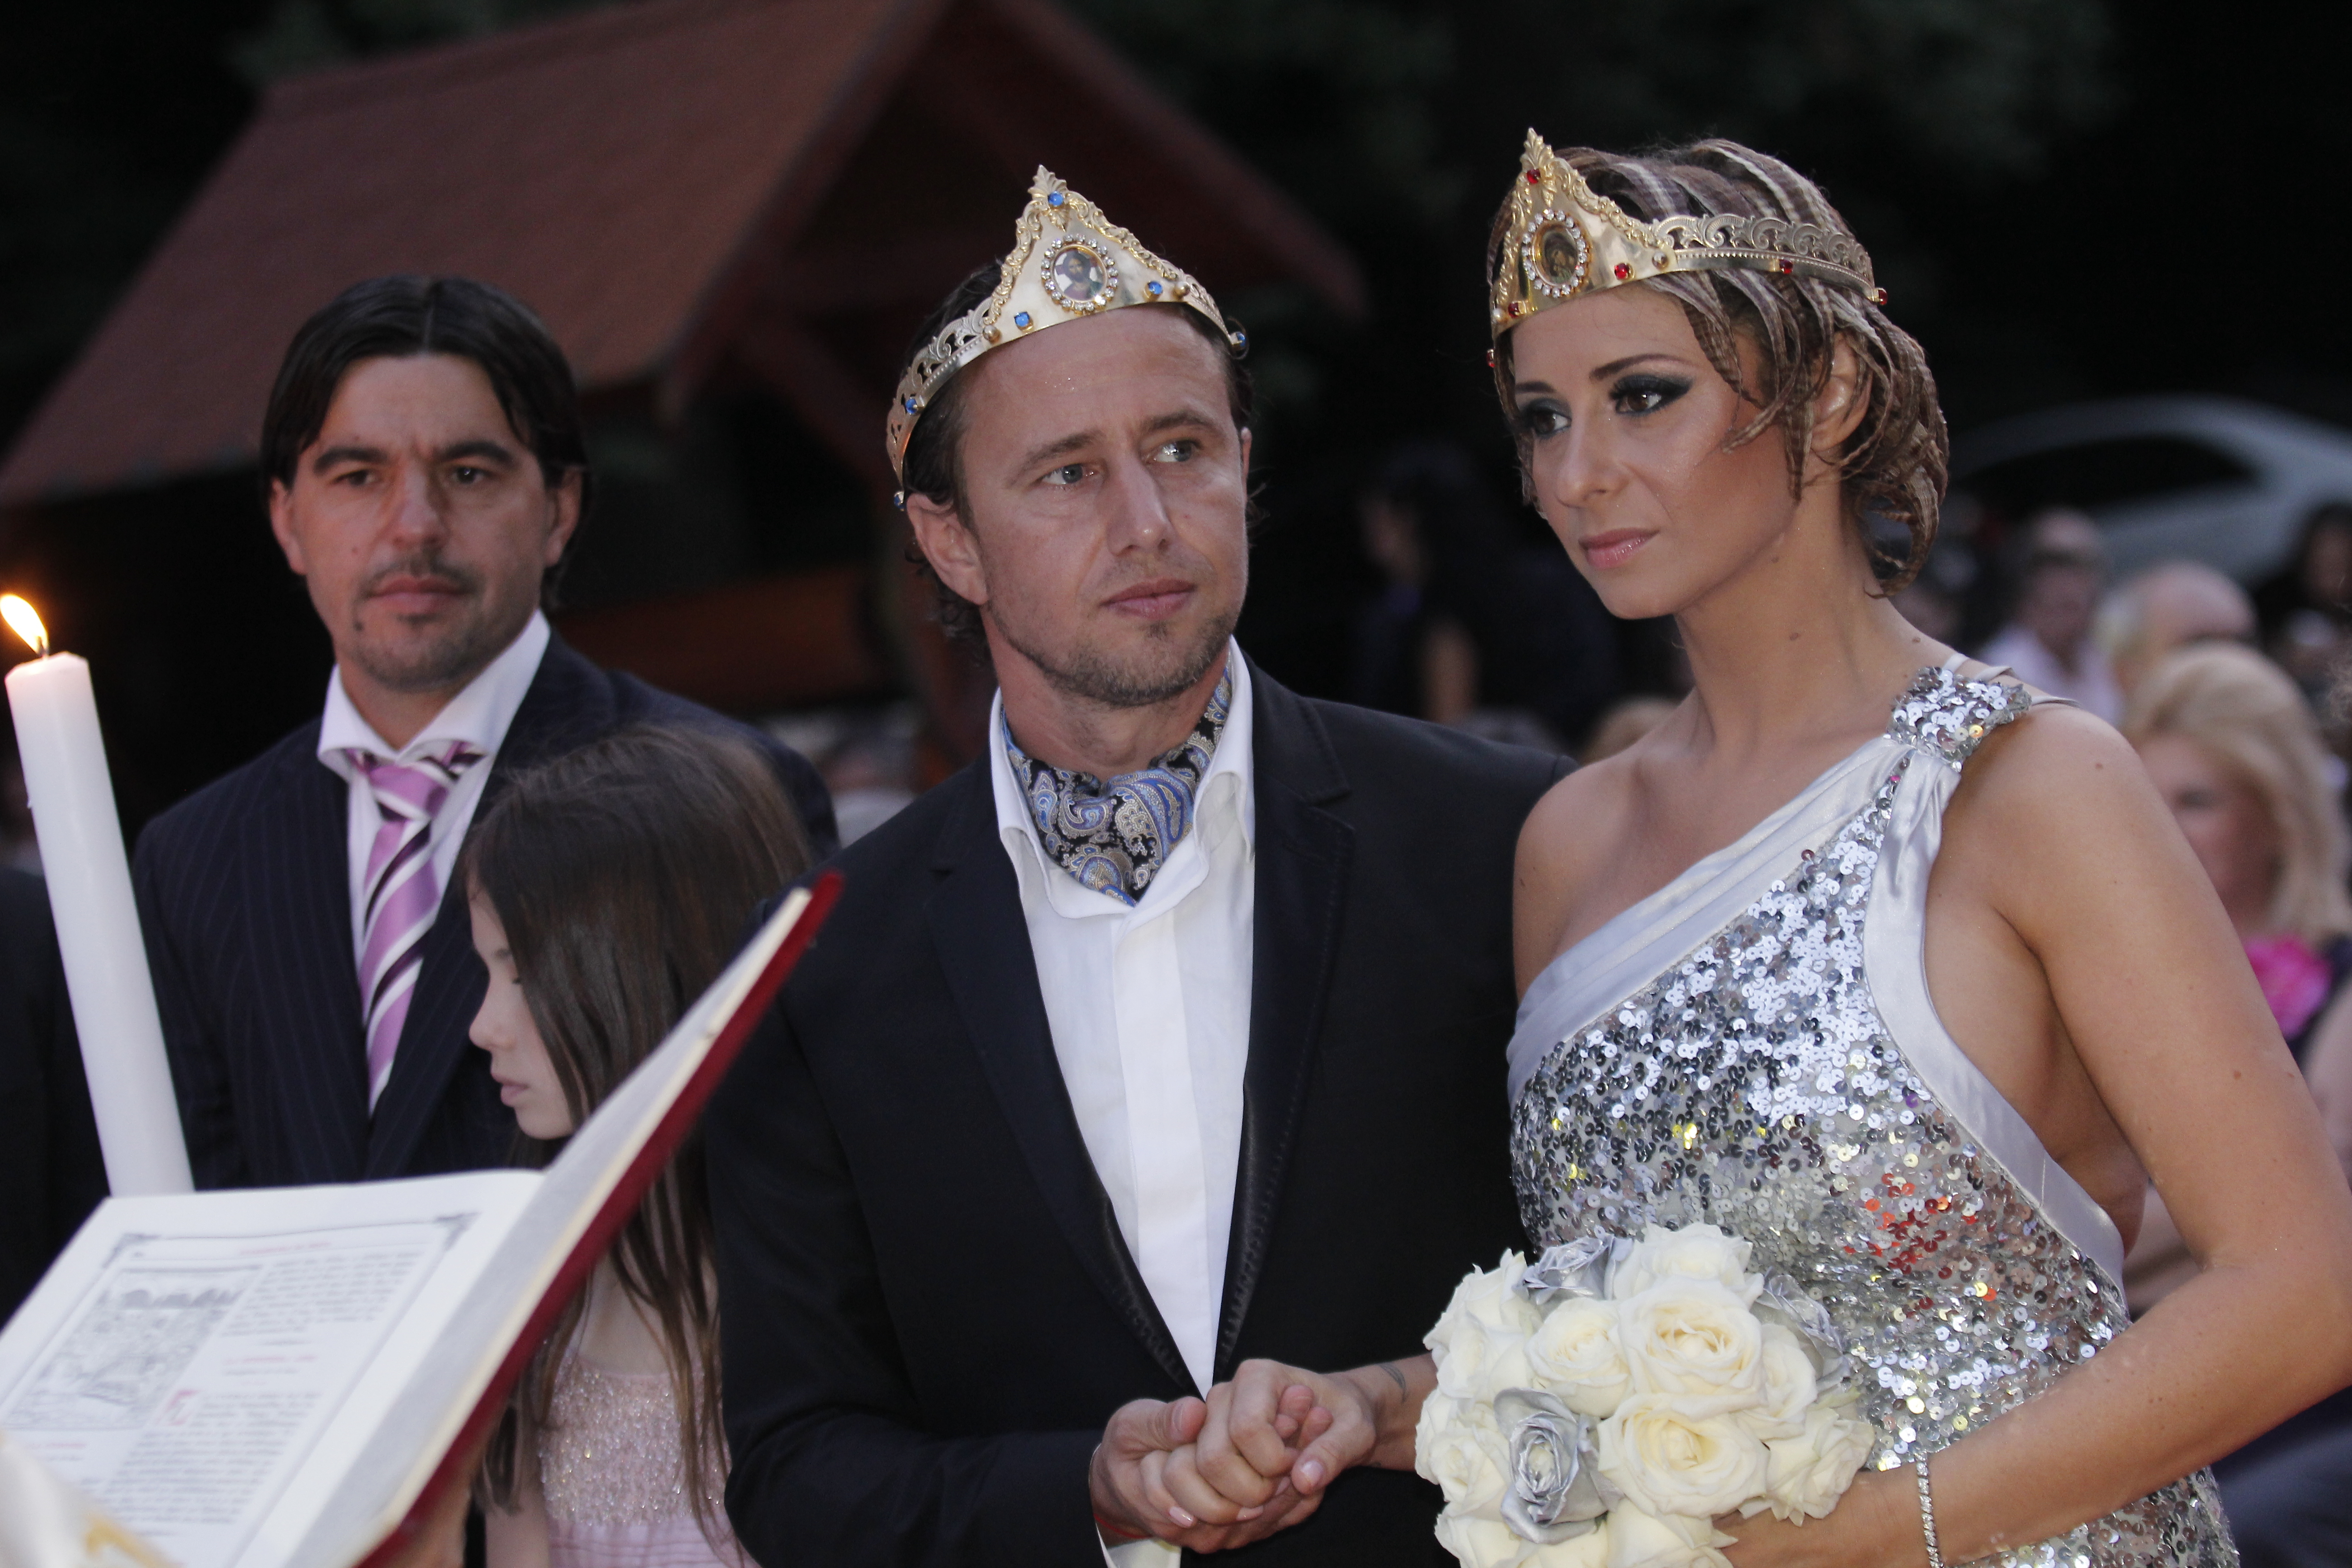 În septembrie 2011, Anamaria Prodan şi Laurenţiu Reghecampf s-au casatorit religios în România